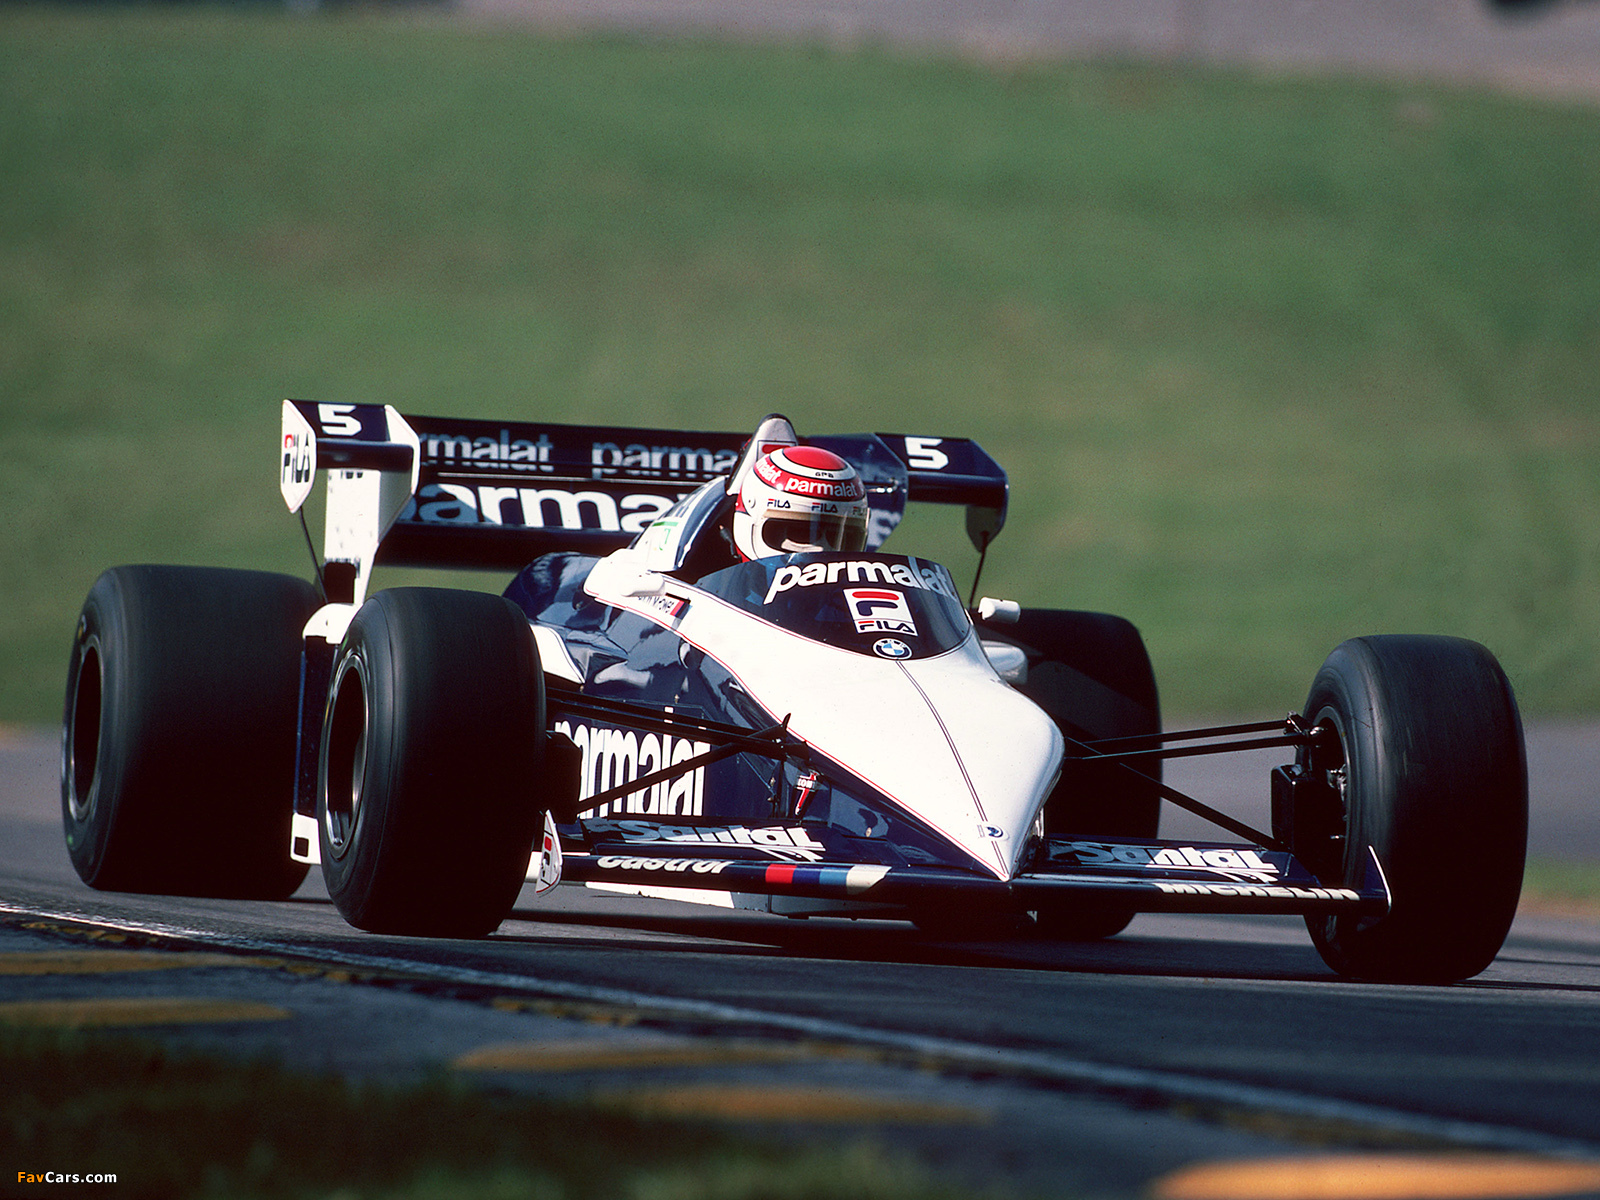 Nelson Piquet pilotando sua Williams BMW